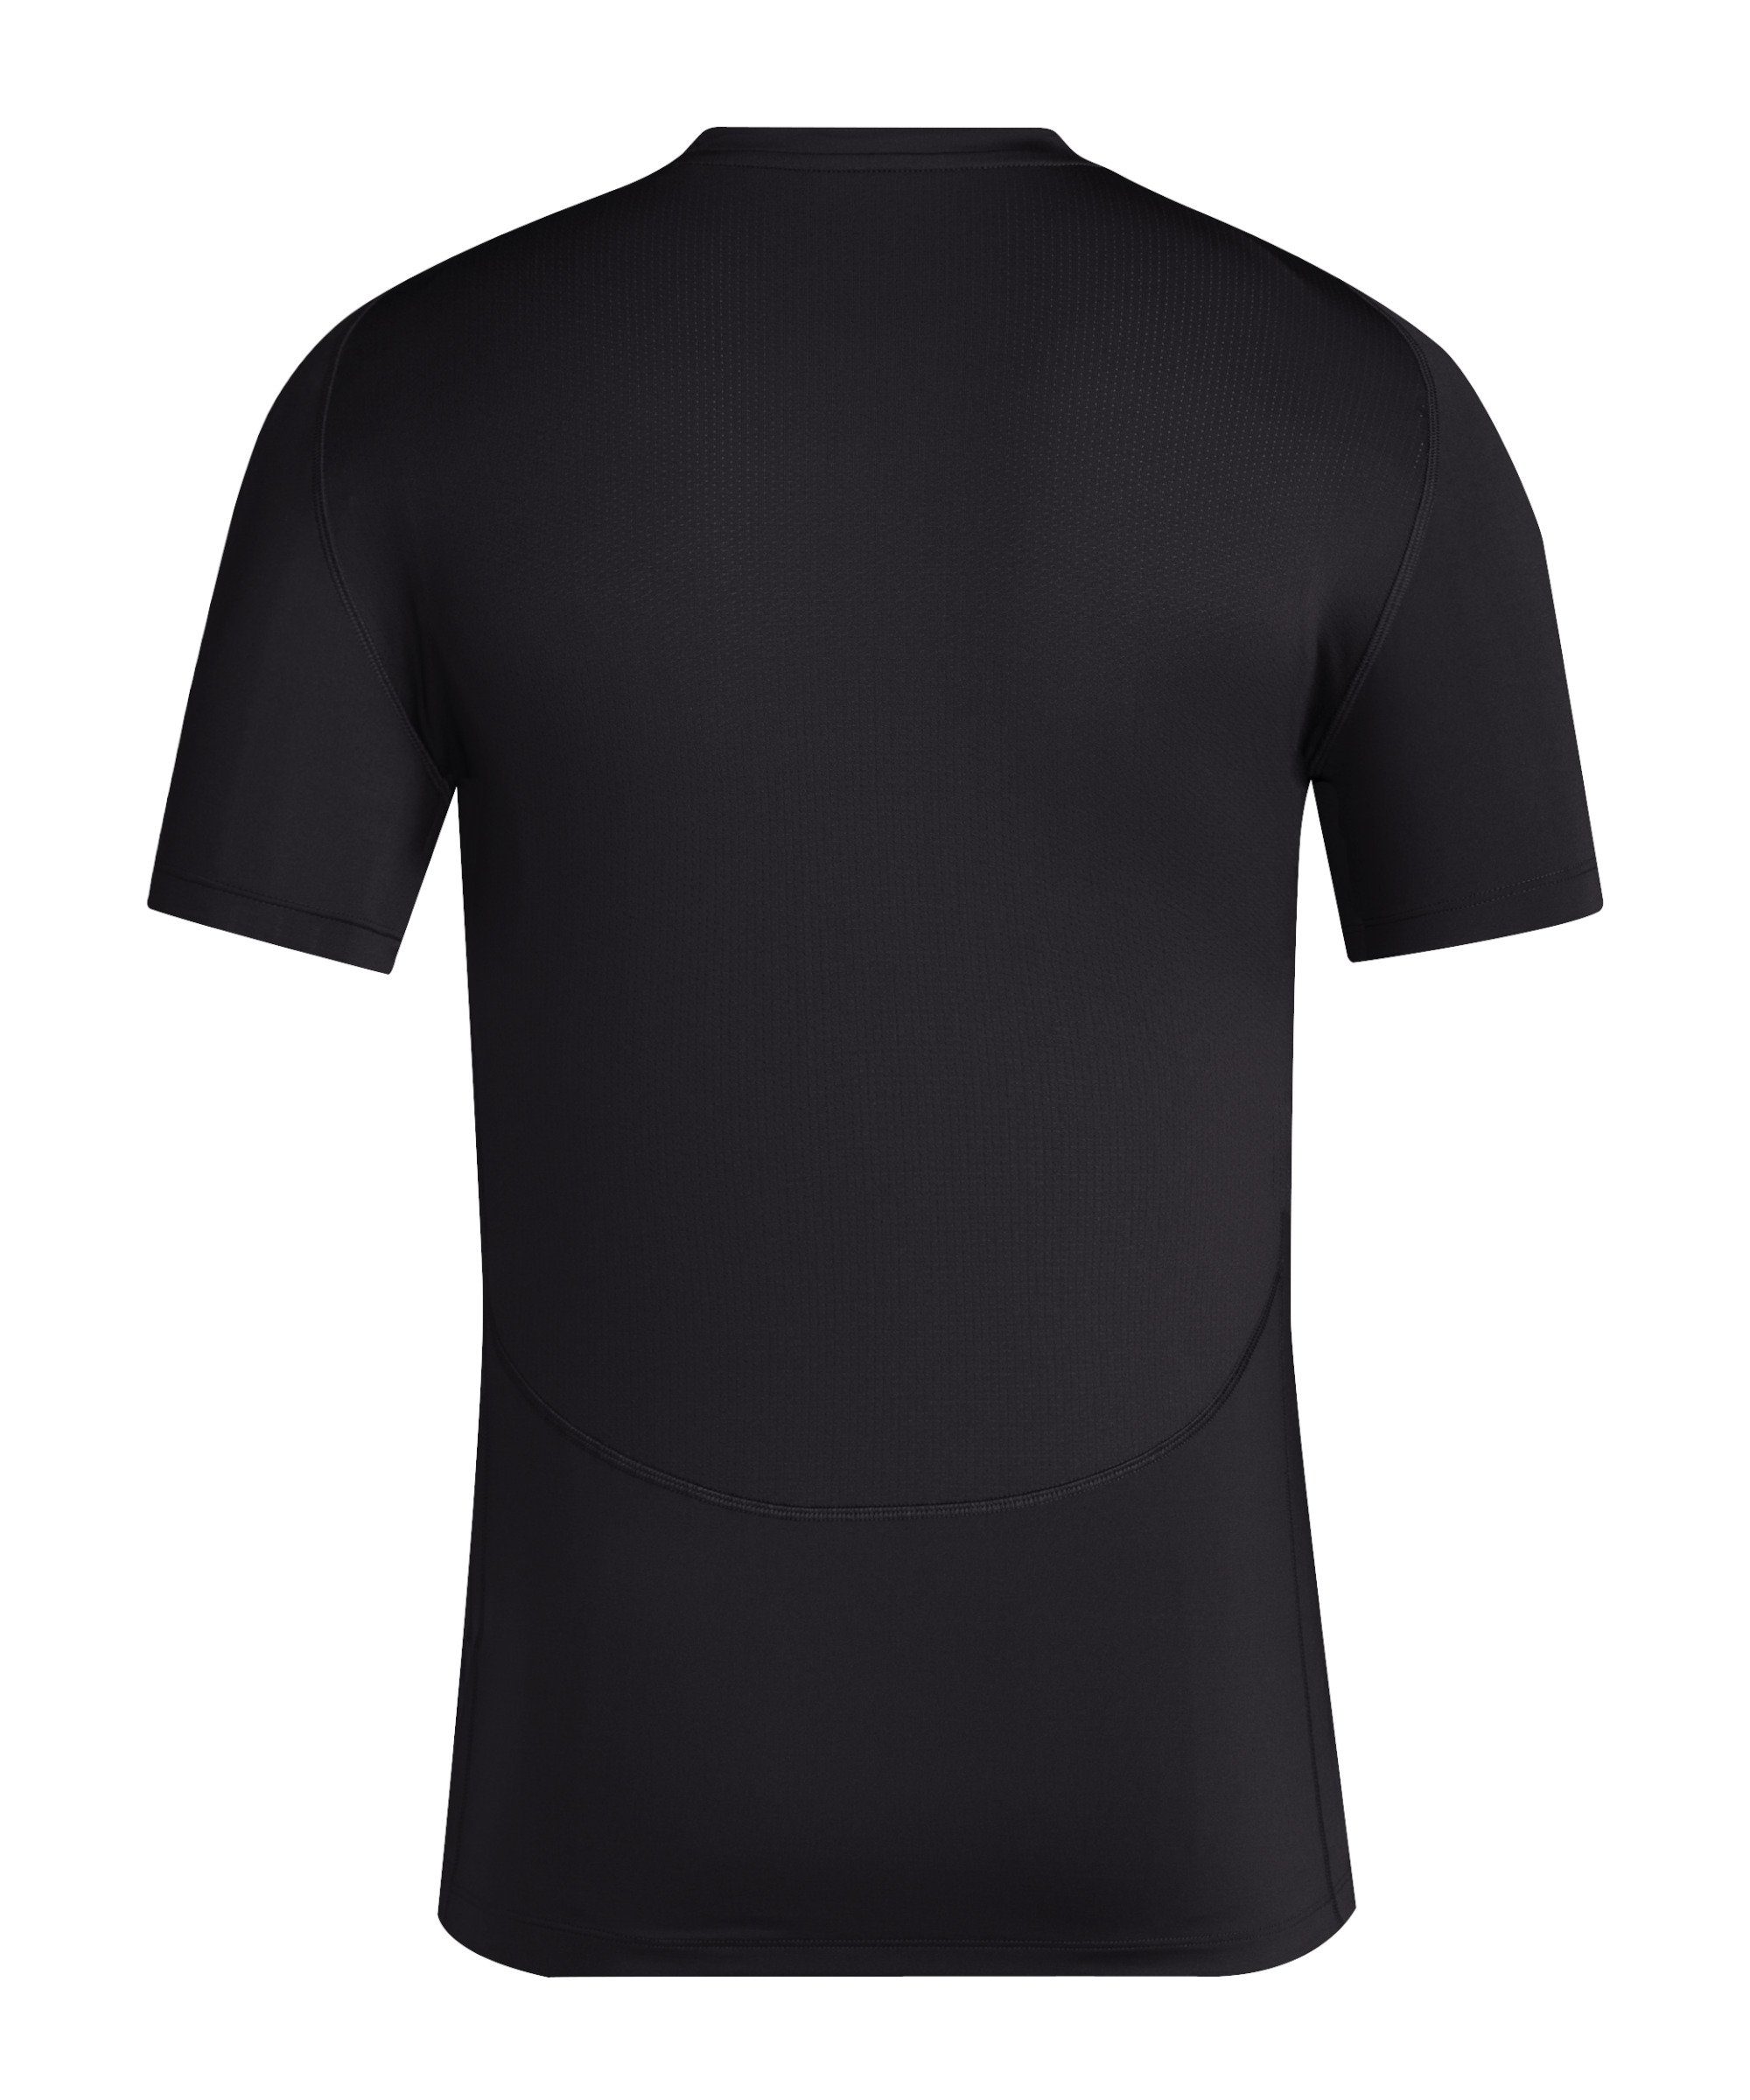 Tech-Fit schwarz adidas Funktionsshirt T-Shirt default Performance